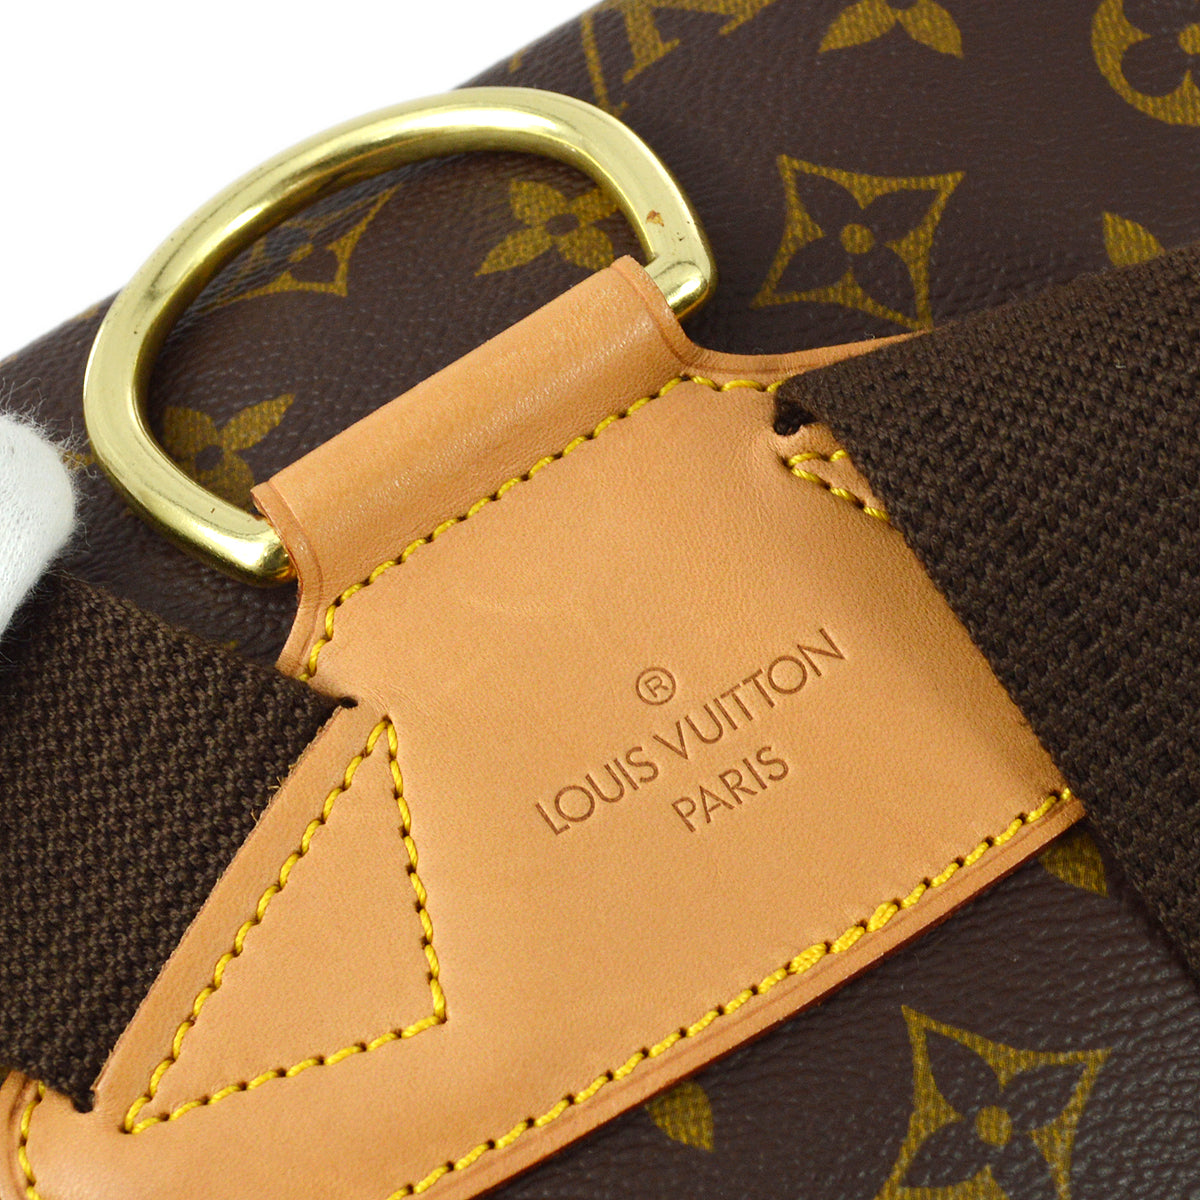 Louis Vuitton 2000 交織字母 Montsouris GM 雙肩包 M51135